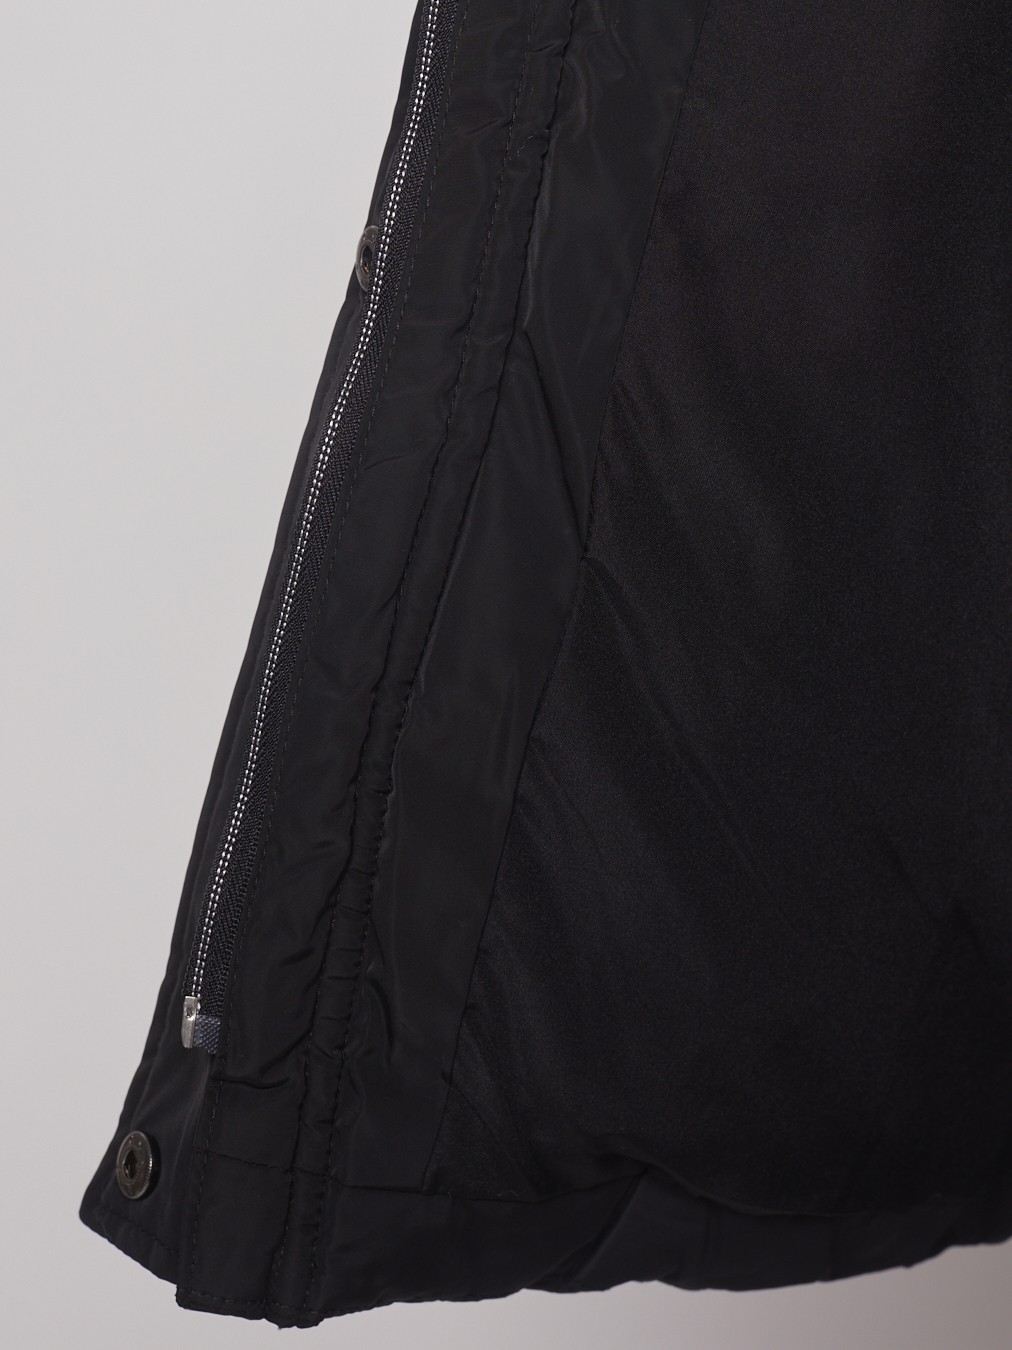 Тёплая куртка с удлинёнными манжетами zolla 022345102284, цвет черный, размер S - фото 3